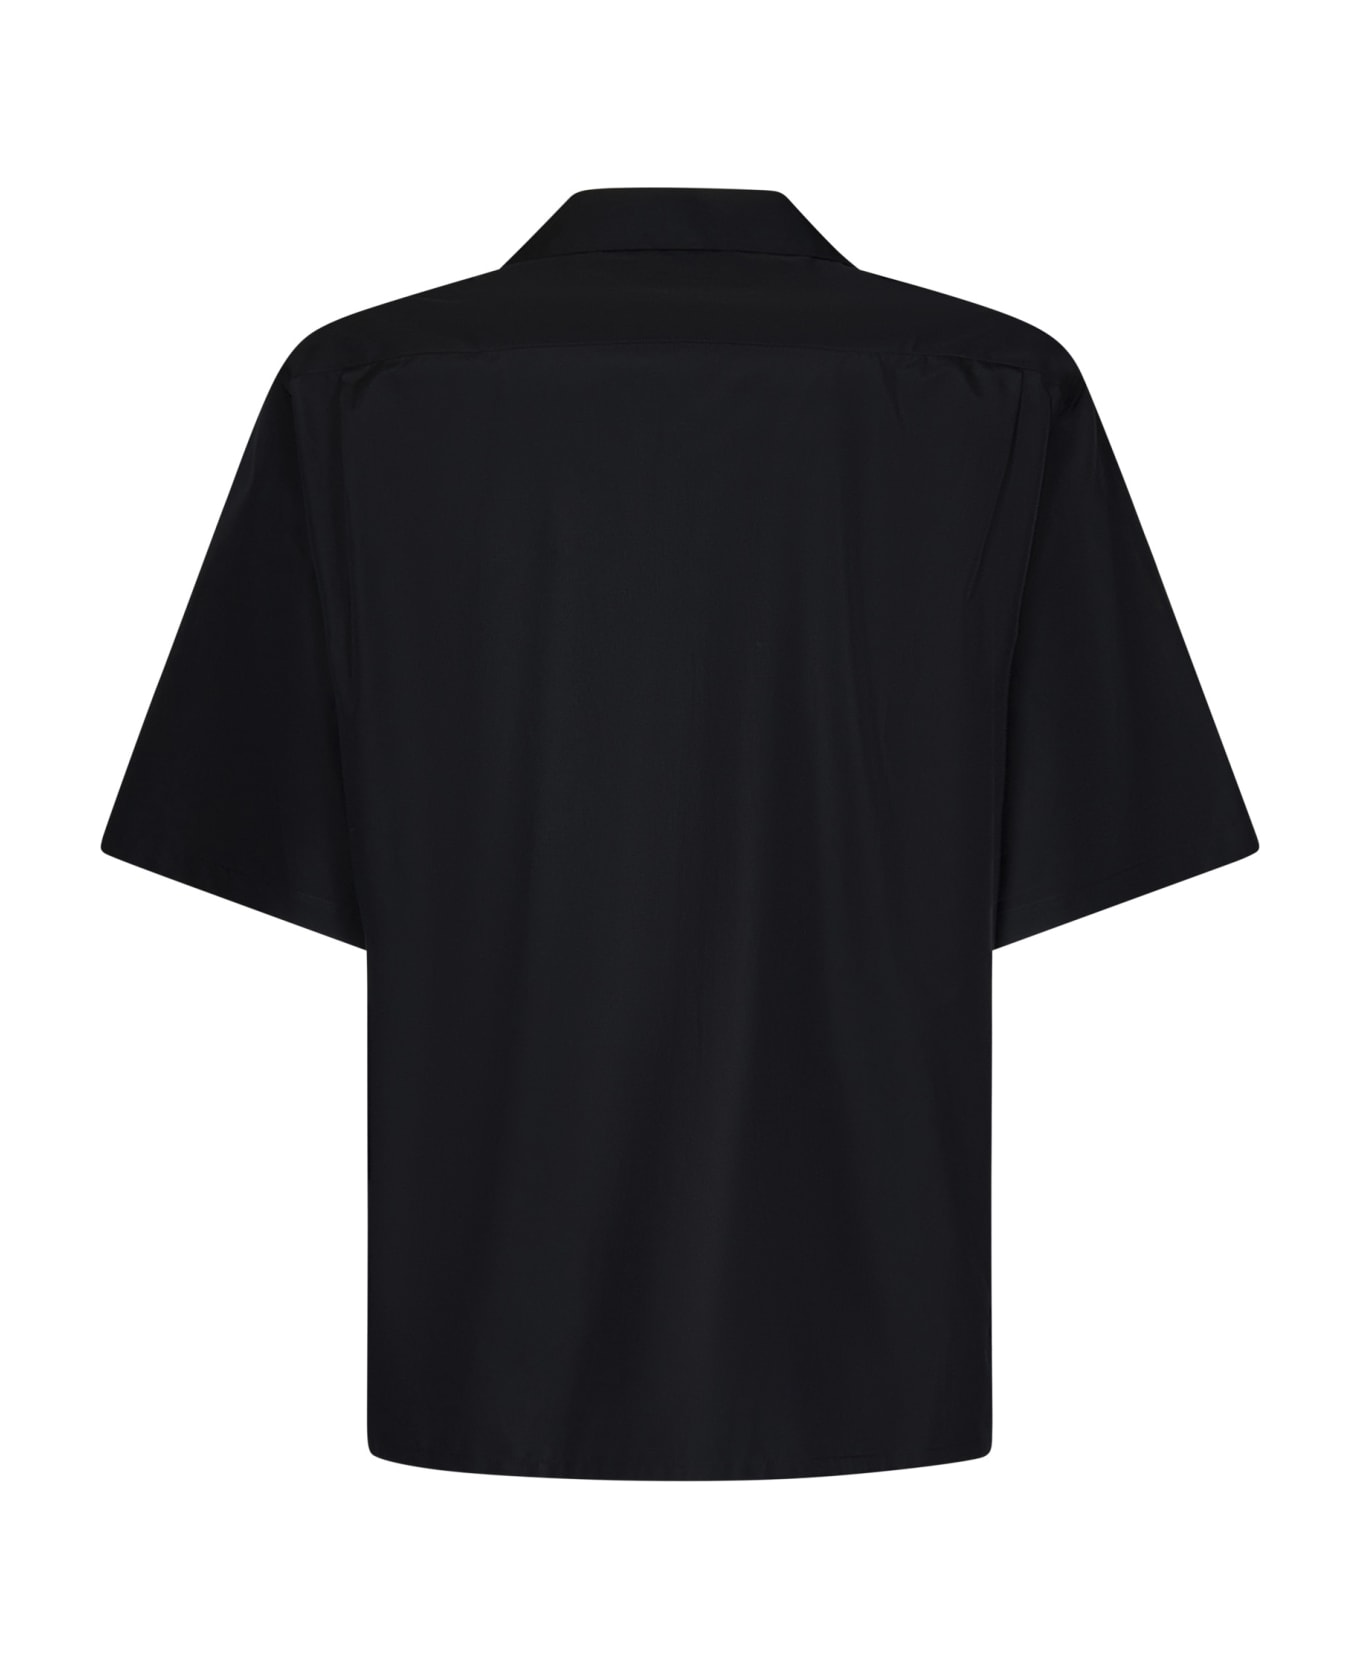 Alexander McQueen Shirt - Black